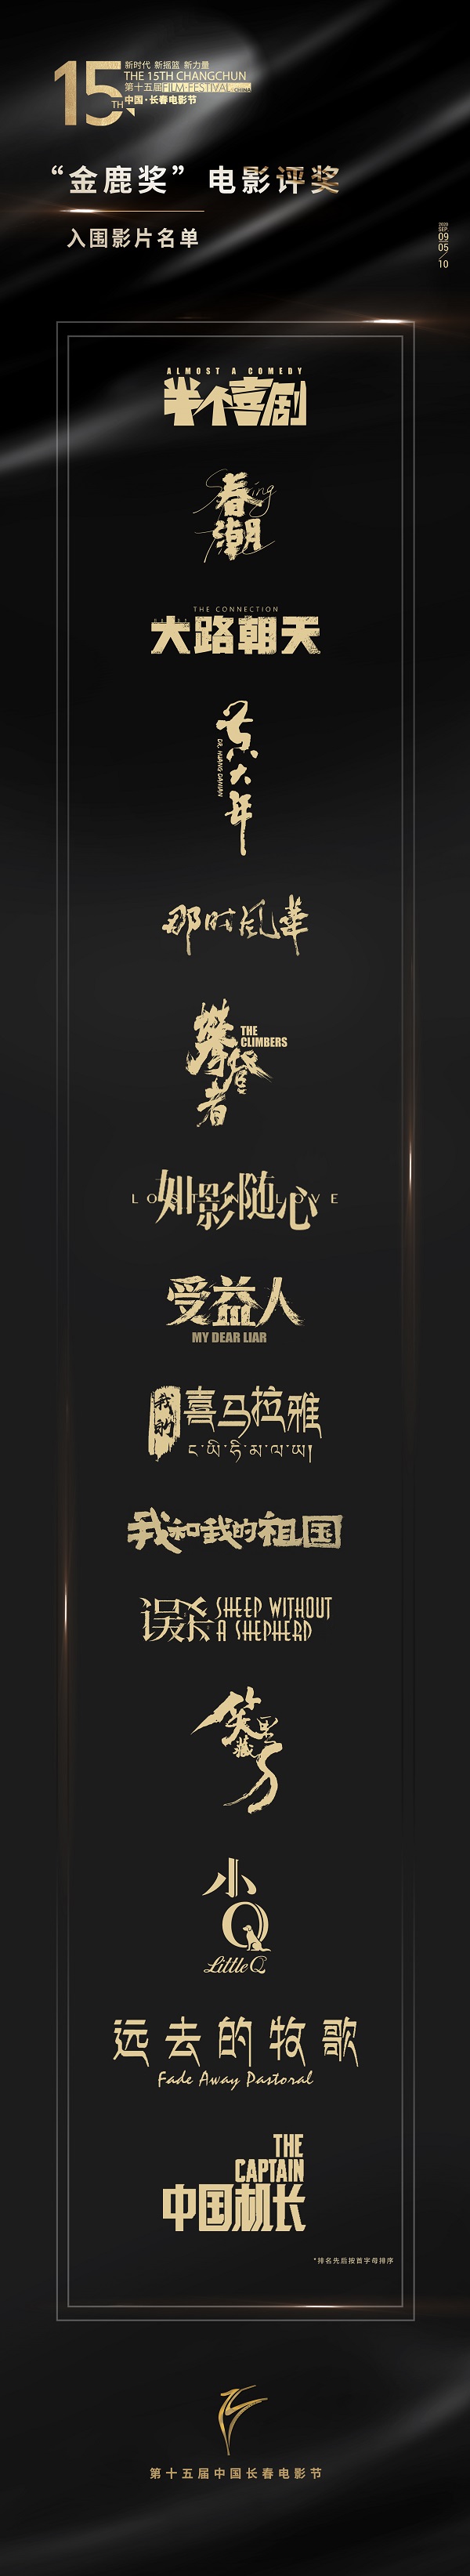 2020第十五届中国长春电影节公布入围影片名单[墙根网]